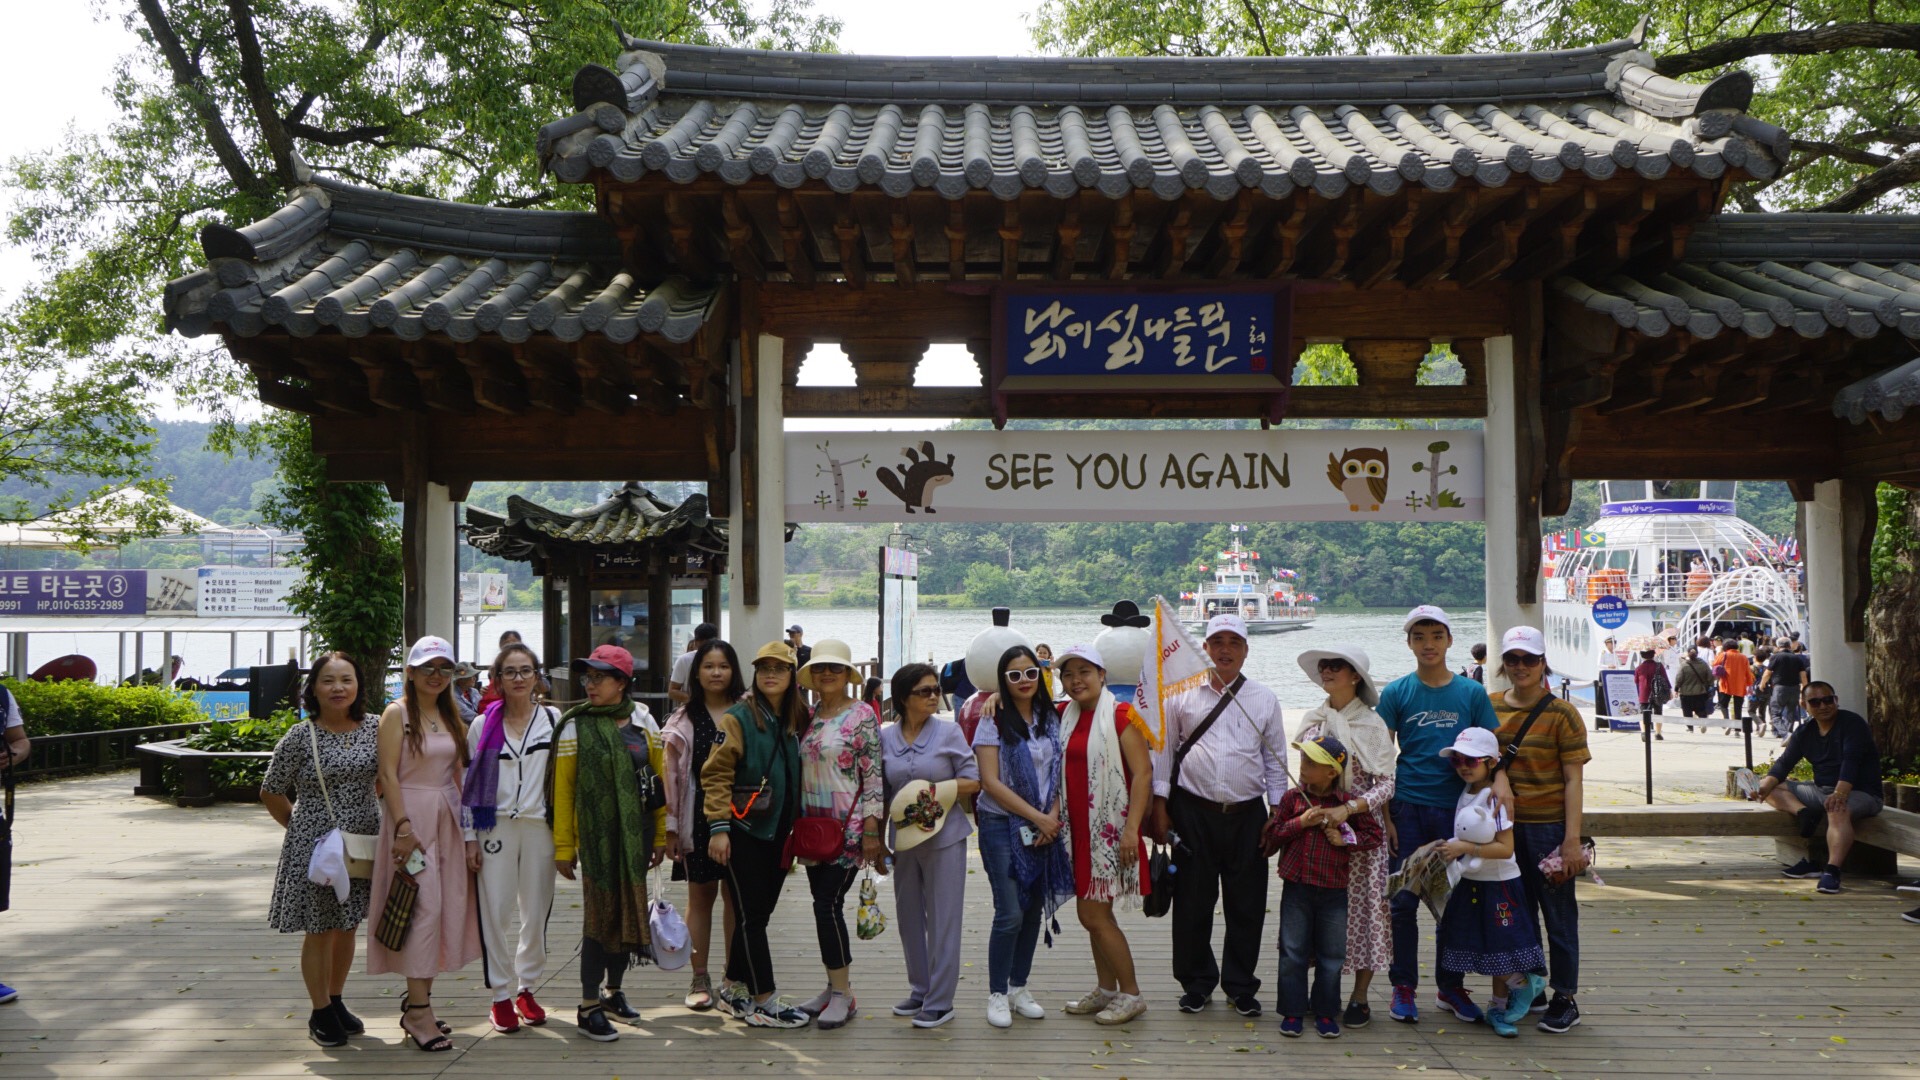 Du lịch Hàn Quốc - Đoàn Hàn Quốc mùa hè